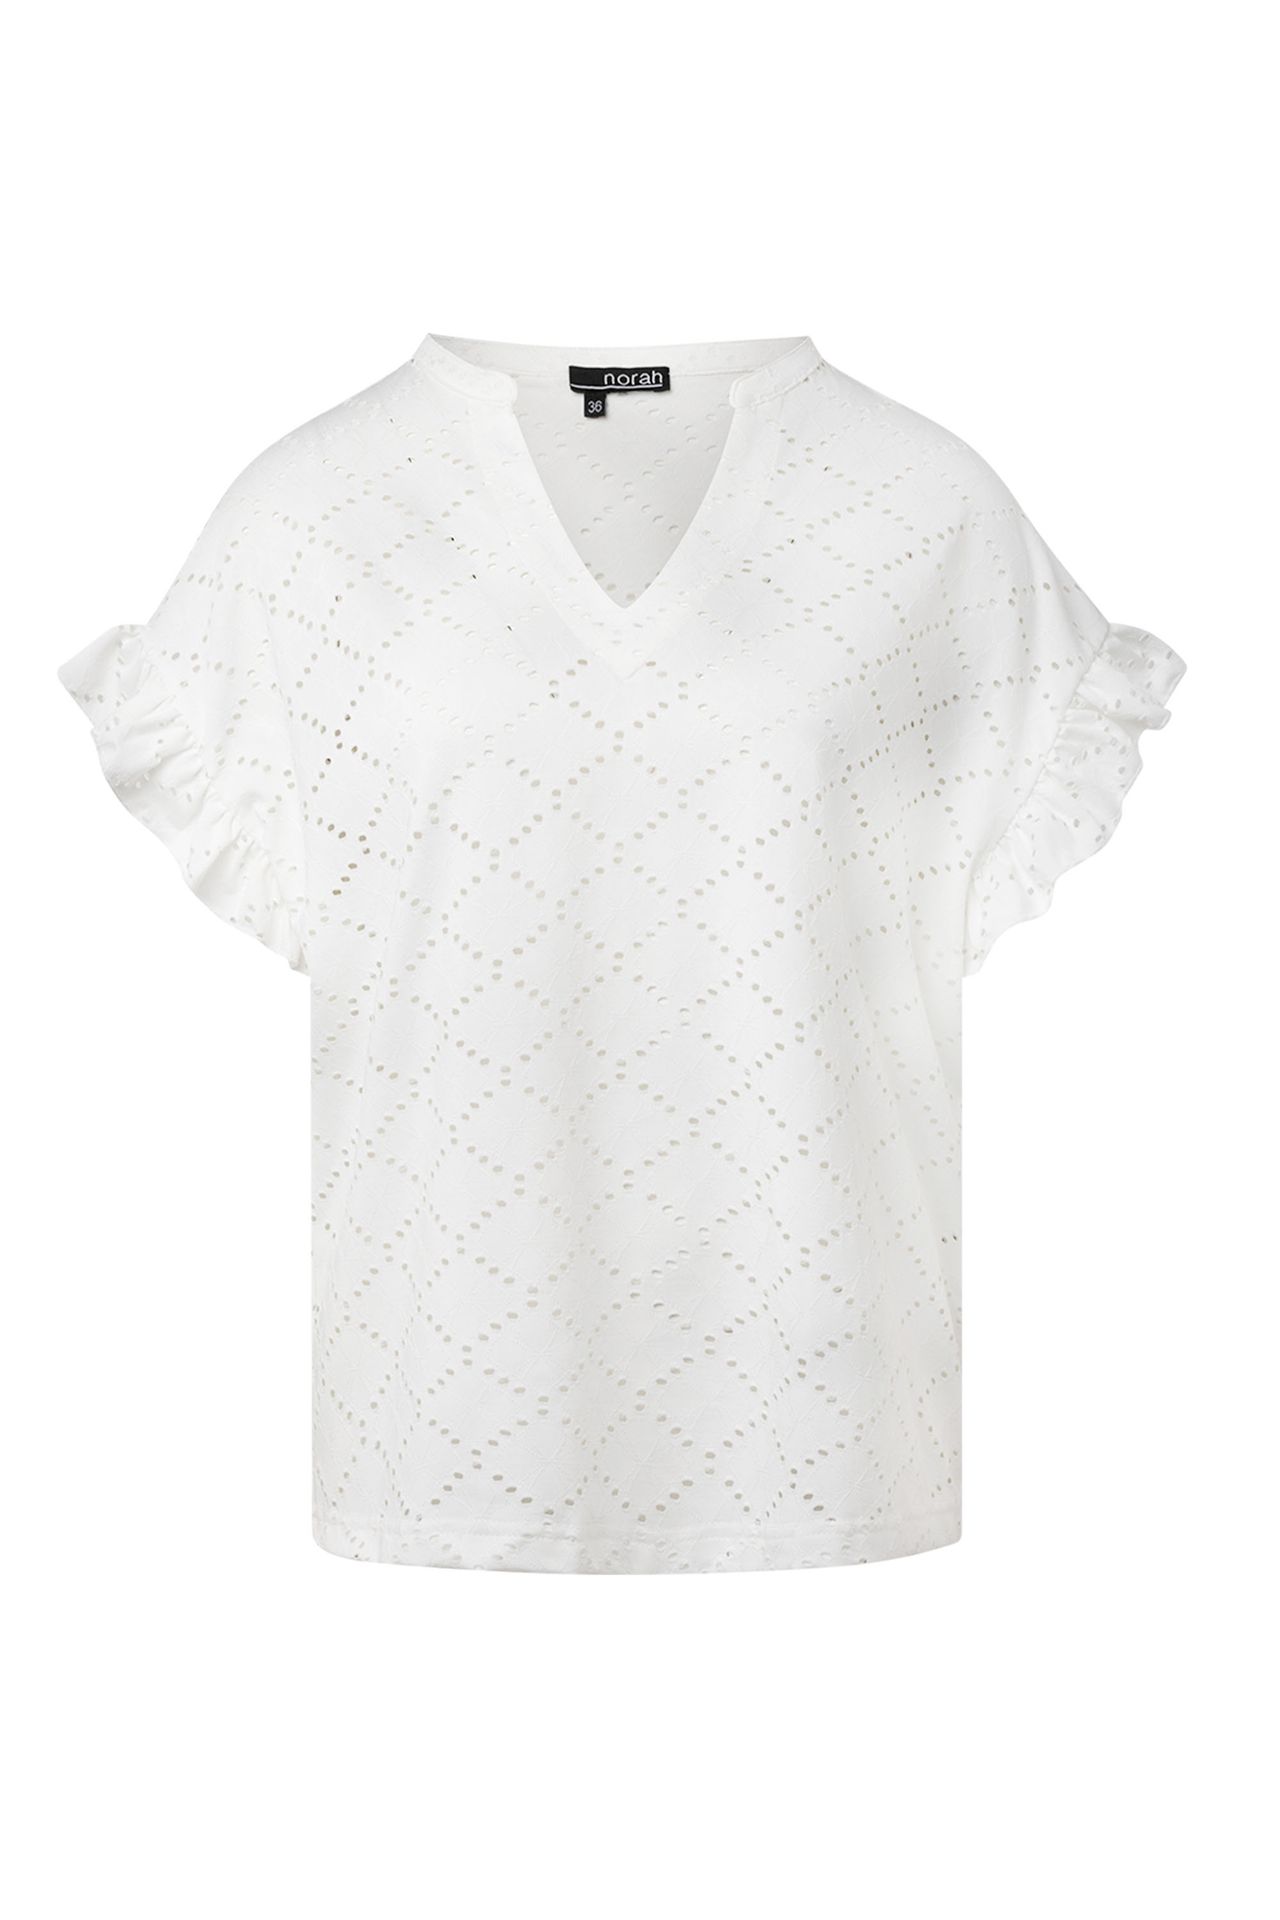 Norah Shirt met ruches off-white 213677-101